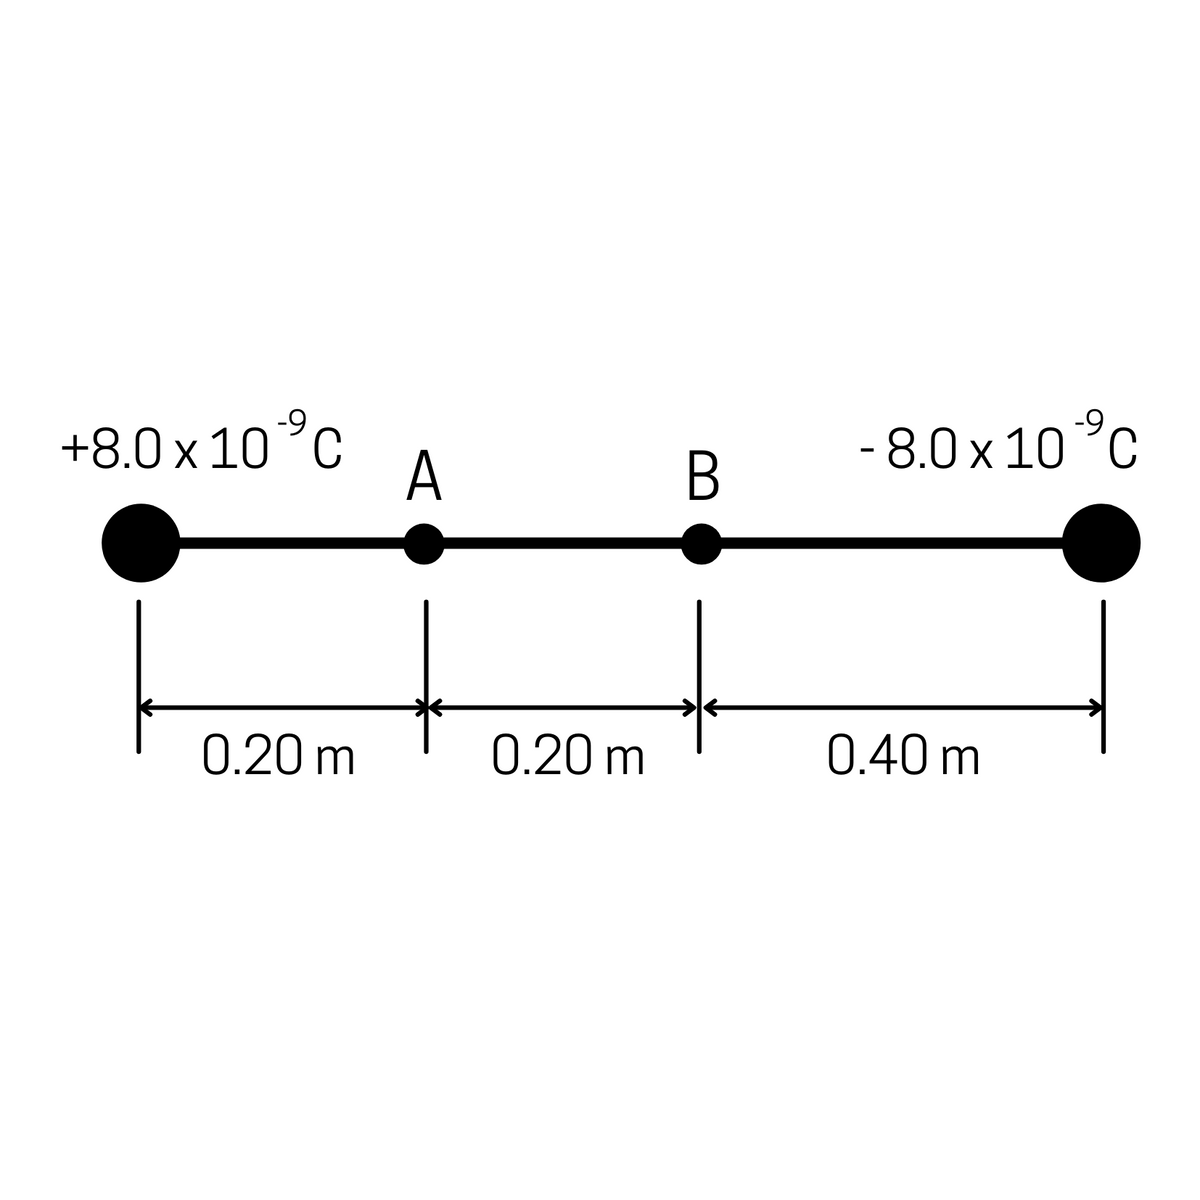 -9
+8.0 x 10°c
A
- 8.0 x 10°c
0.20 m
0.20 m
0.40 m
